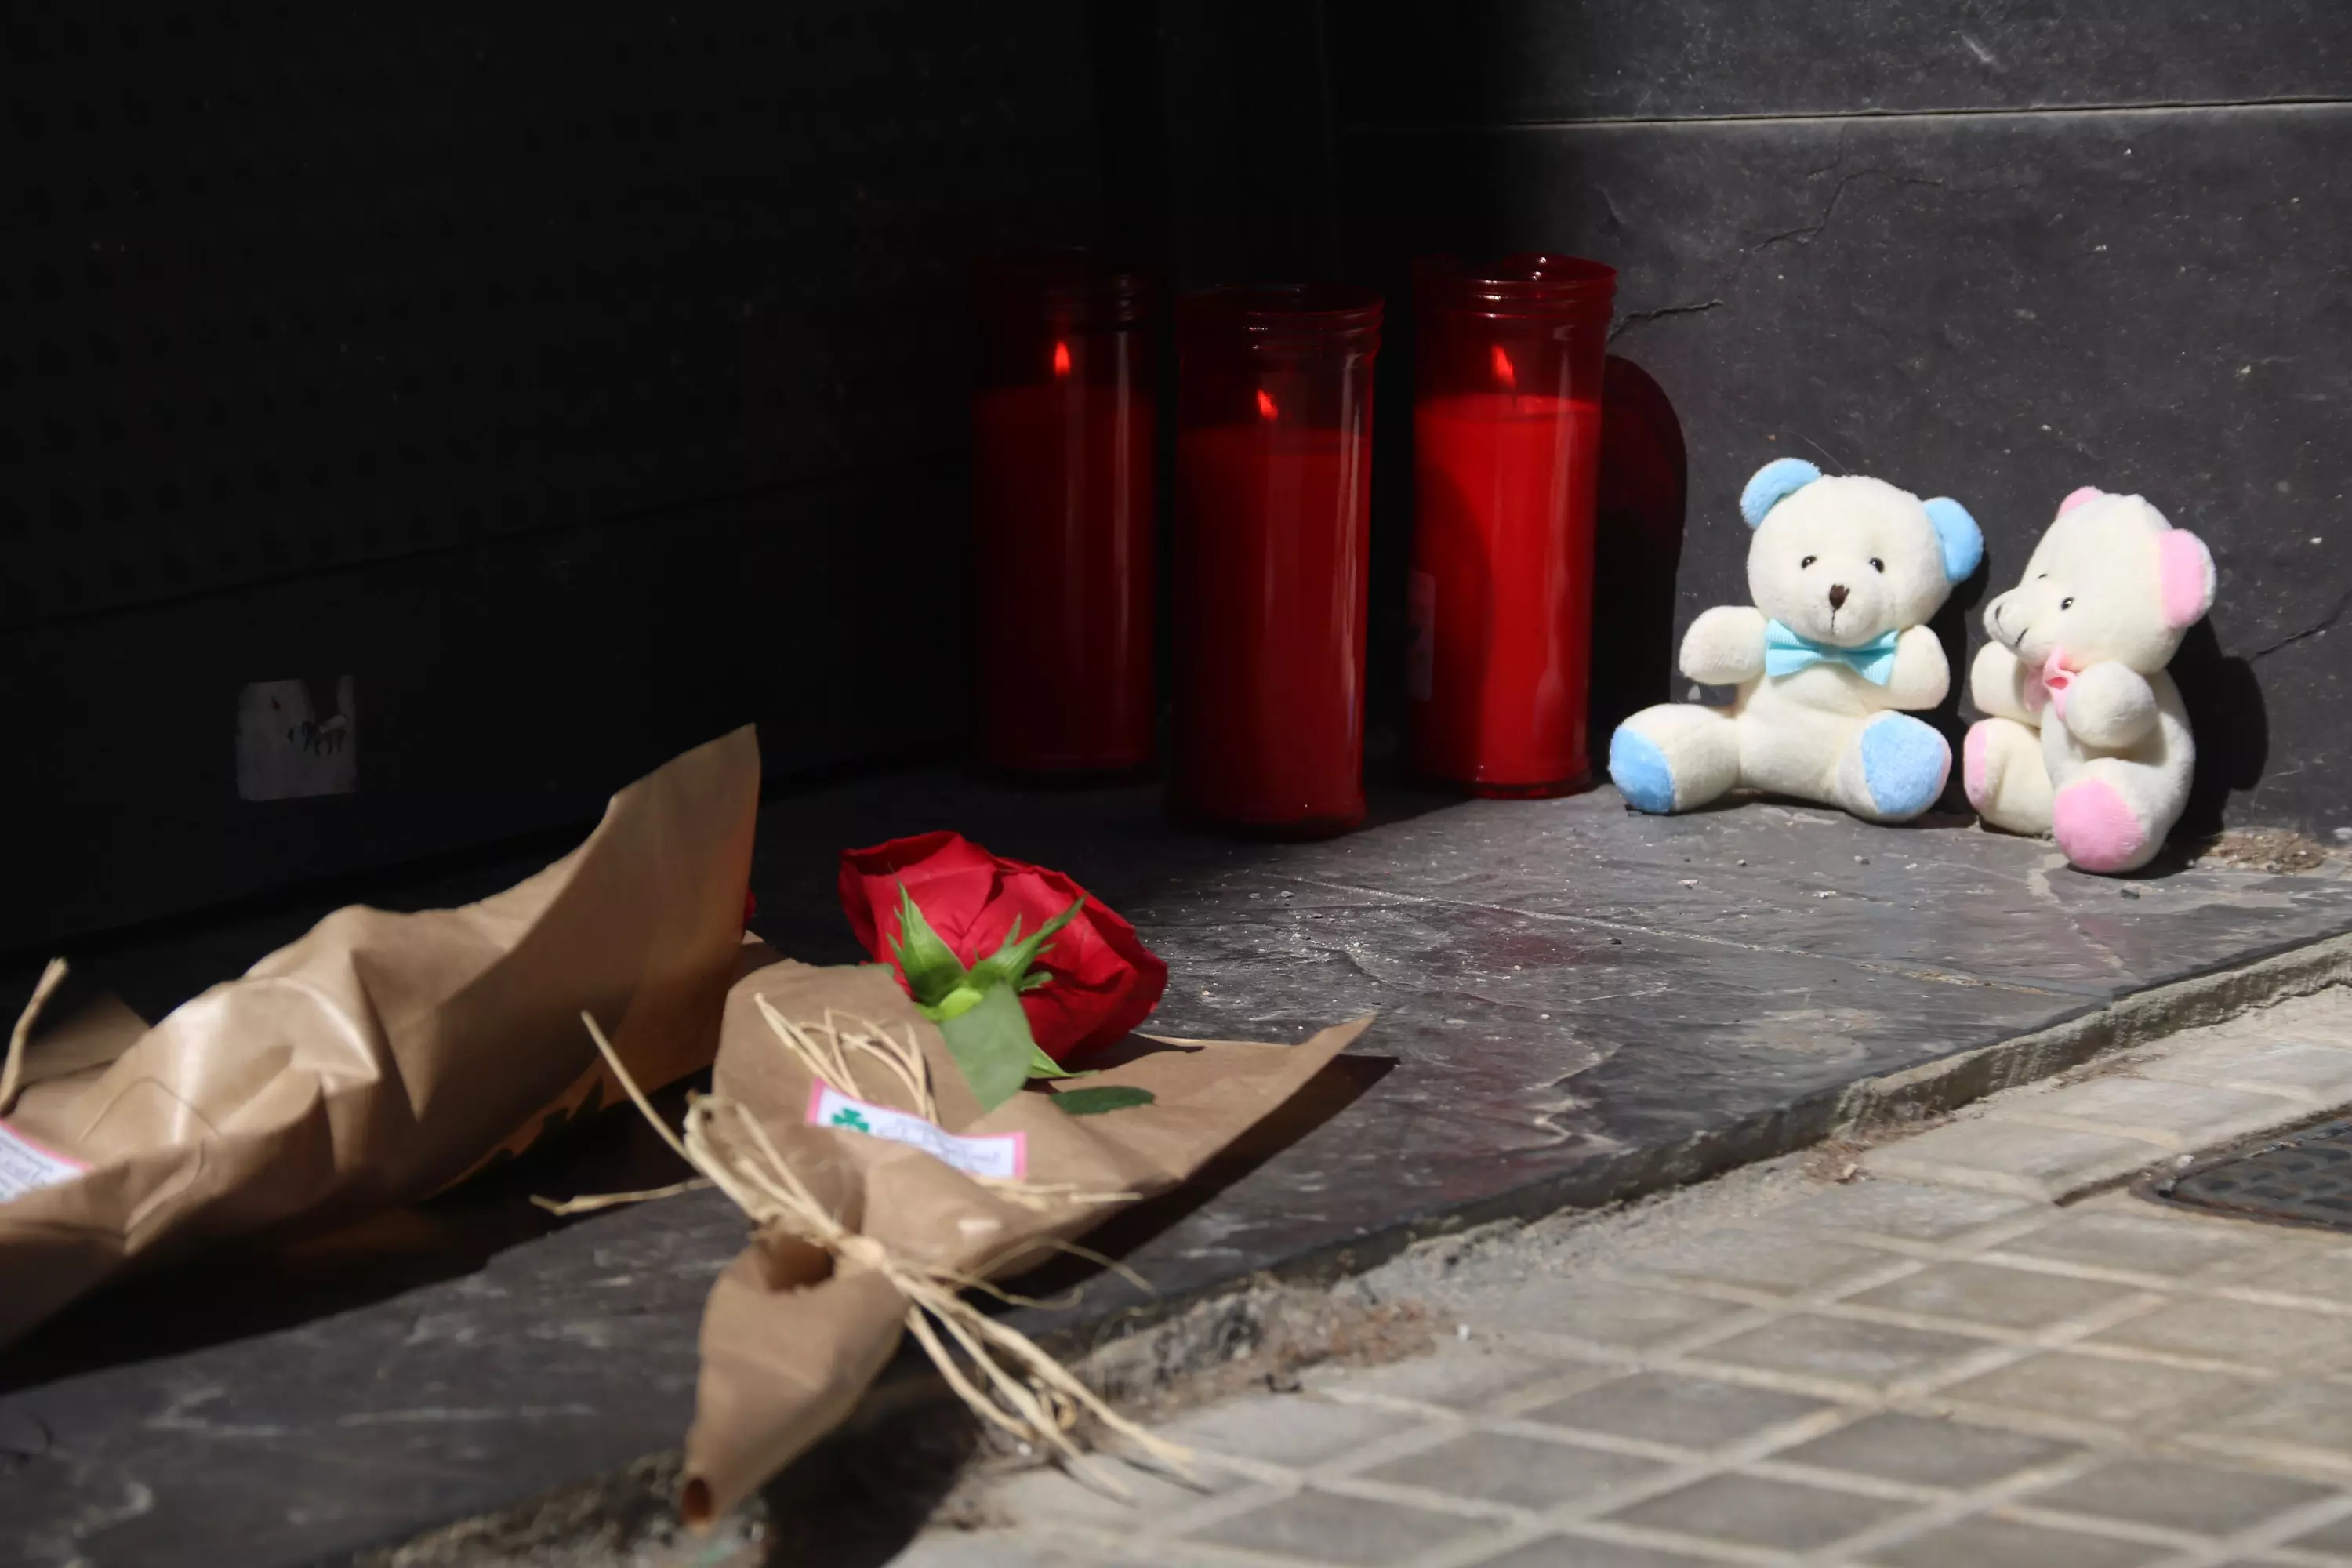 Flores, velas y peluches en recuerdo de las víctimas del triple homicidio de El Prat de Llobregat.— Gemma Sánchez / ACN